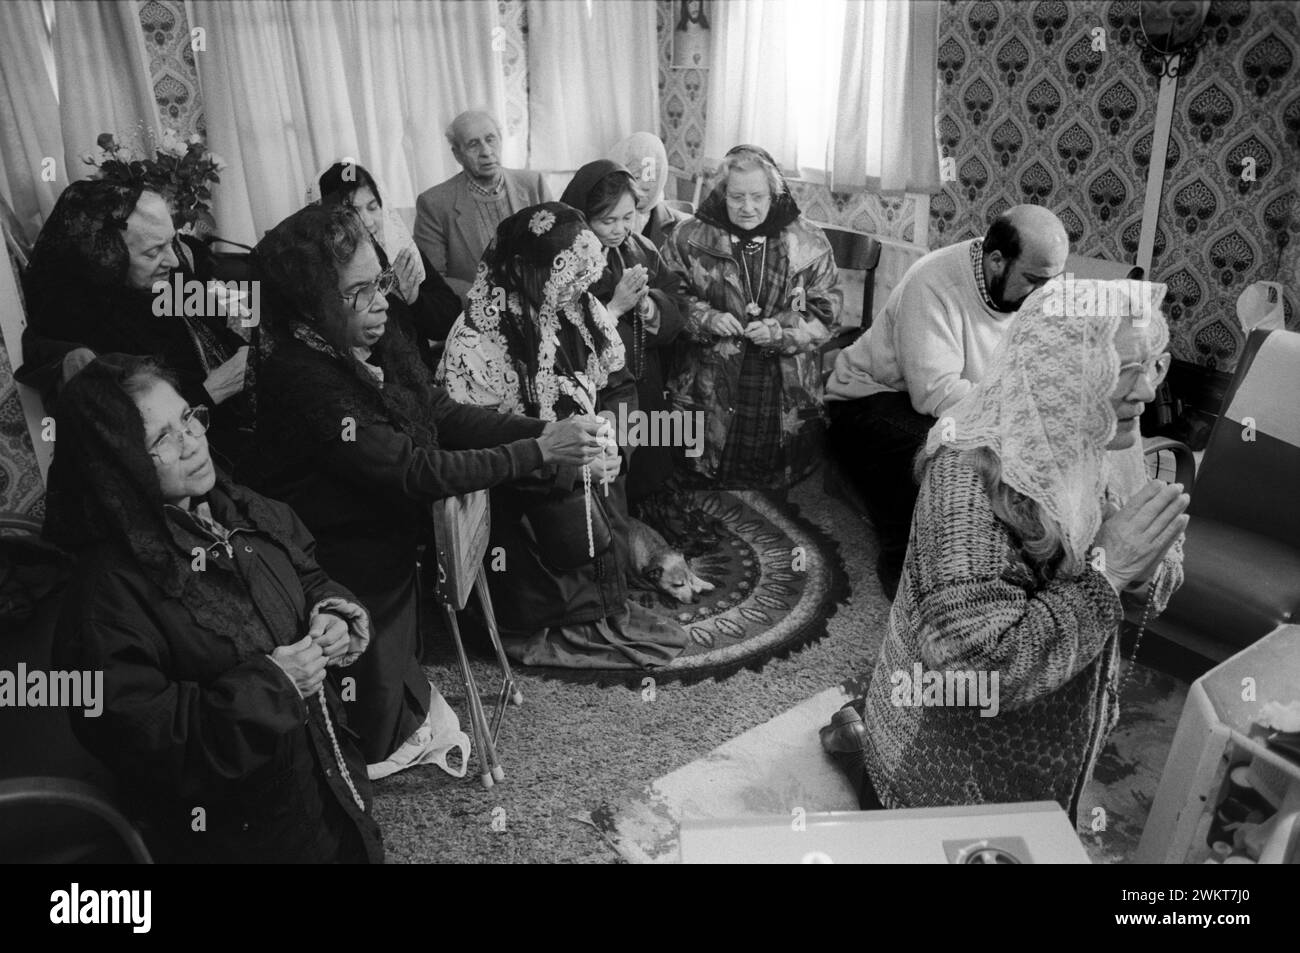 Mme Nora Arthurs (1916 - 2011) une boîte vocale catholique, voyant et mystique, dans sa maison connue sous le nom de «Maison de Marie» sur Roggel Road, Canvey Island menant une réunion de prière. Canvey Island, Essex, Angleterre années 1996 1990 Royaume-Uni HOMER SYKES Banque D'Images